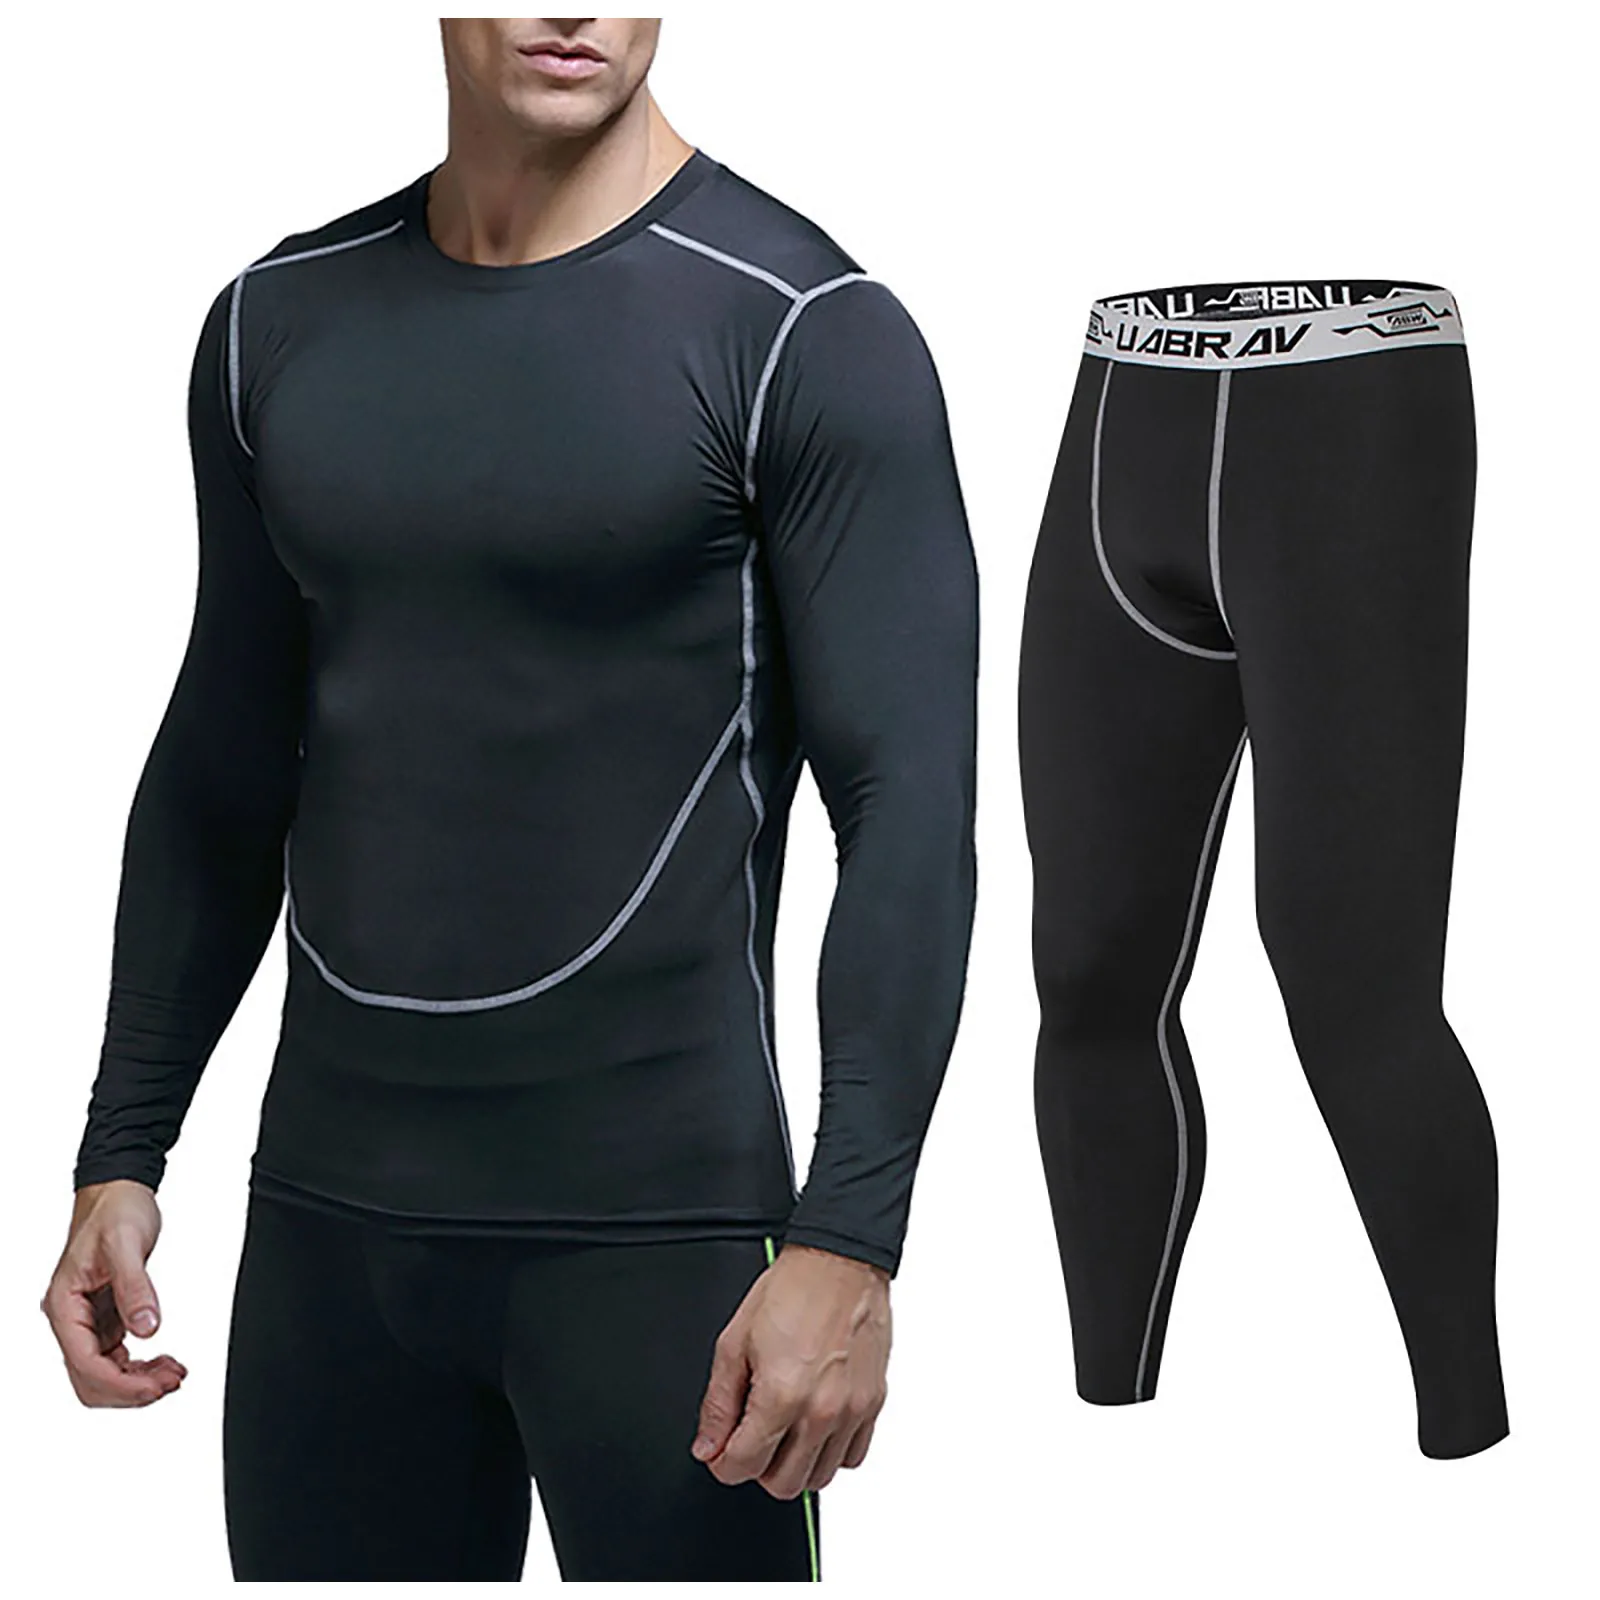 Мужской комплект для бега, леггинсы для спортзала, термобелье, спартанскоекомпрессионное белье для фитнеса, Mma Rashguard, мужские быстросохнущиеколготки, спортивный костюм